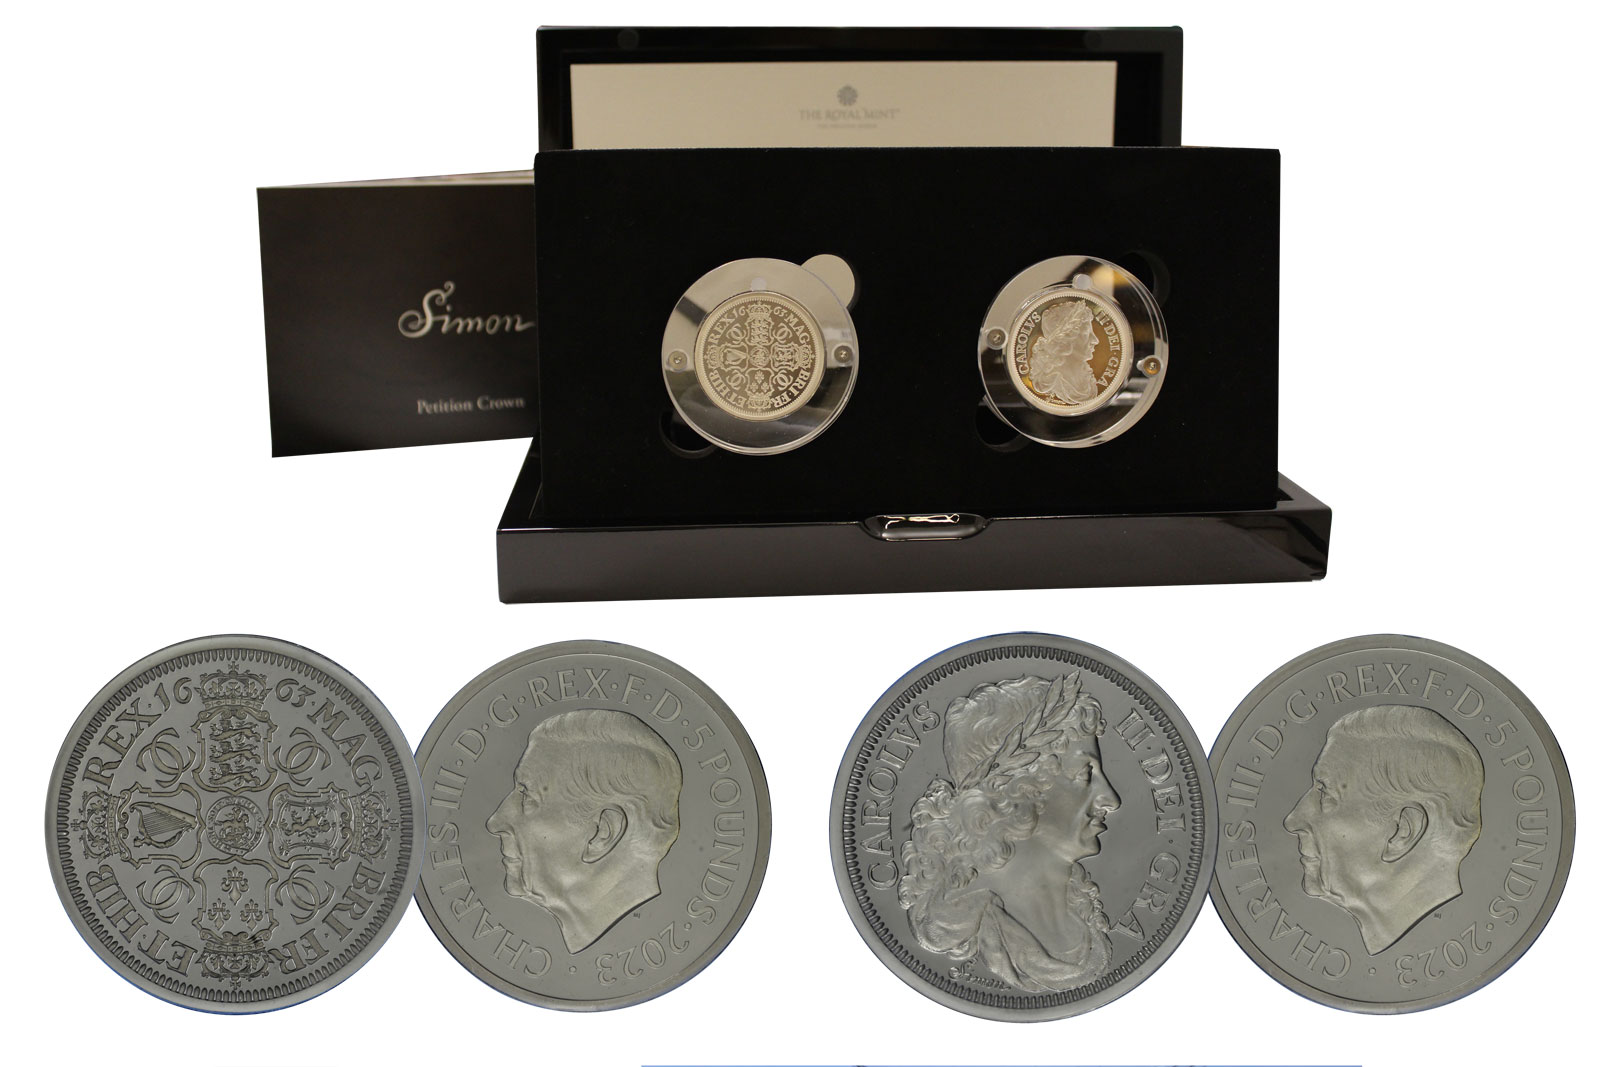 "Petition Crown di T.Simon" - set di 2 monete da 5 sterline gr. 62,42 in ag. 999/ - Tiratura 3250 pz 